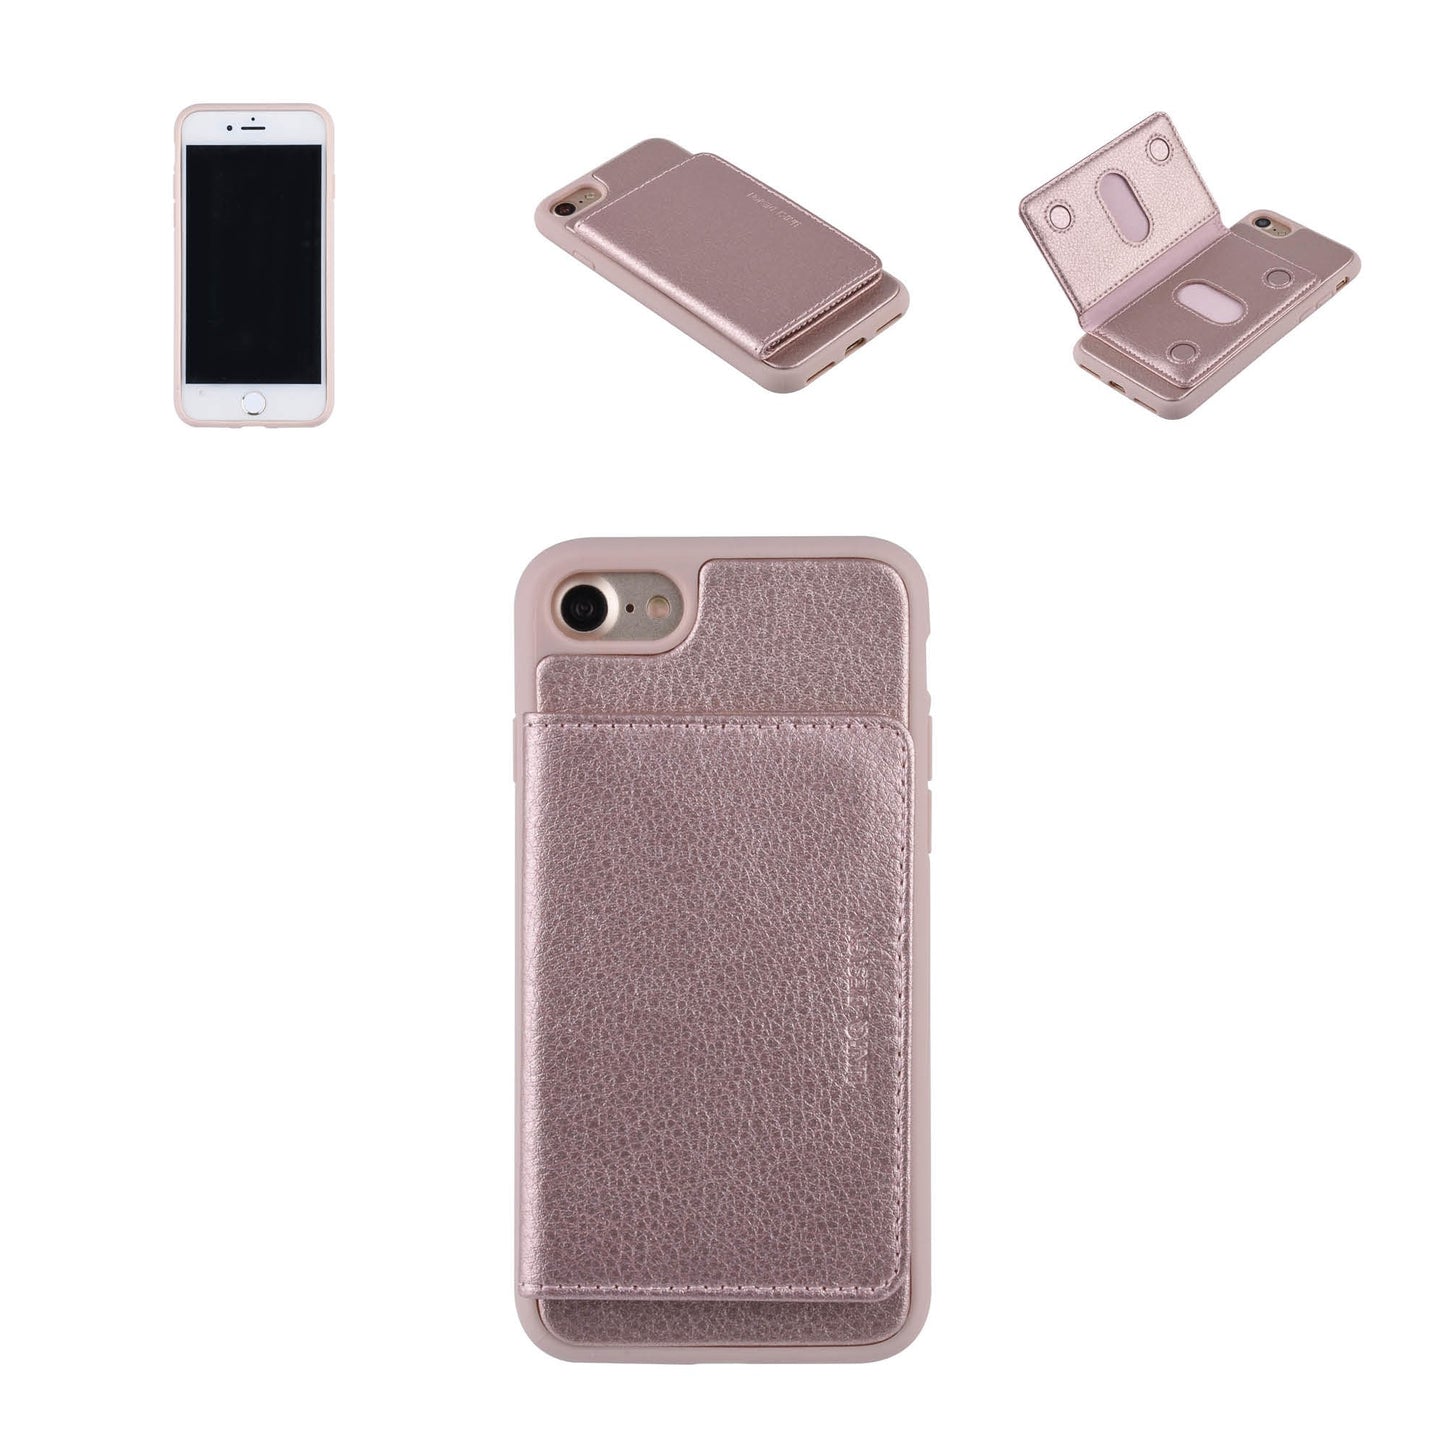 Backcover hoesje voor de iPhone SE (2022/2020) iPhone 8/ iPhone 7 - Roze